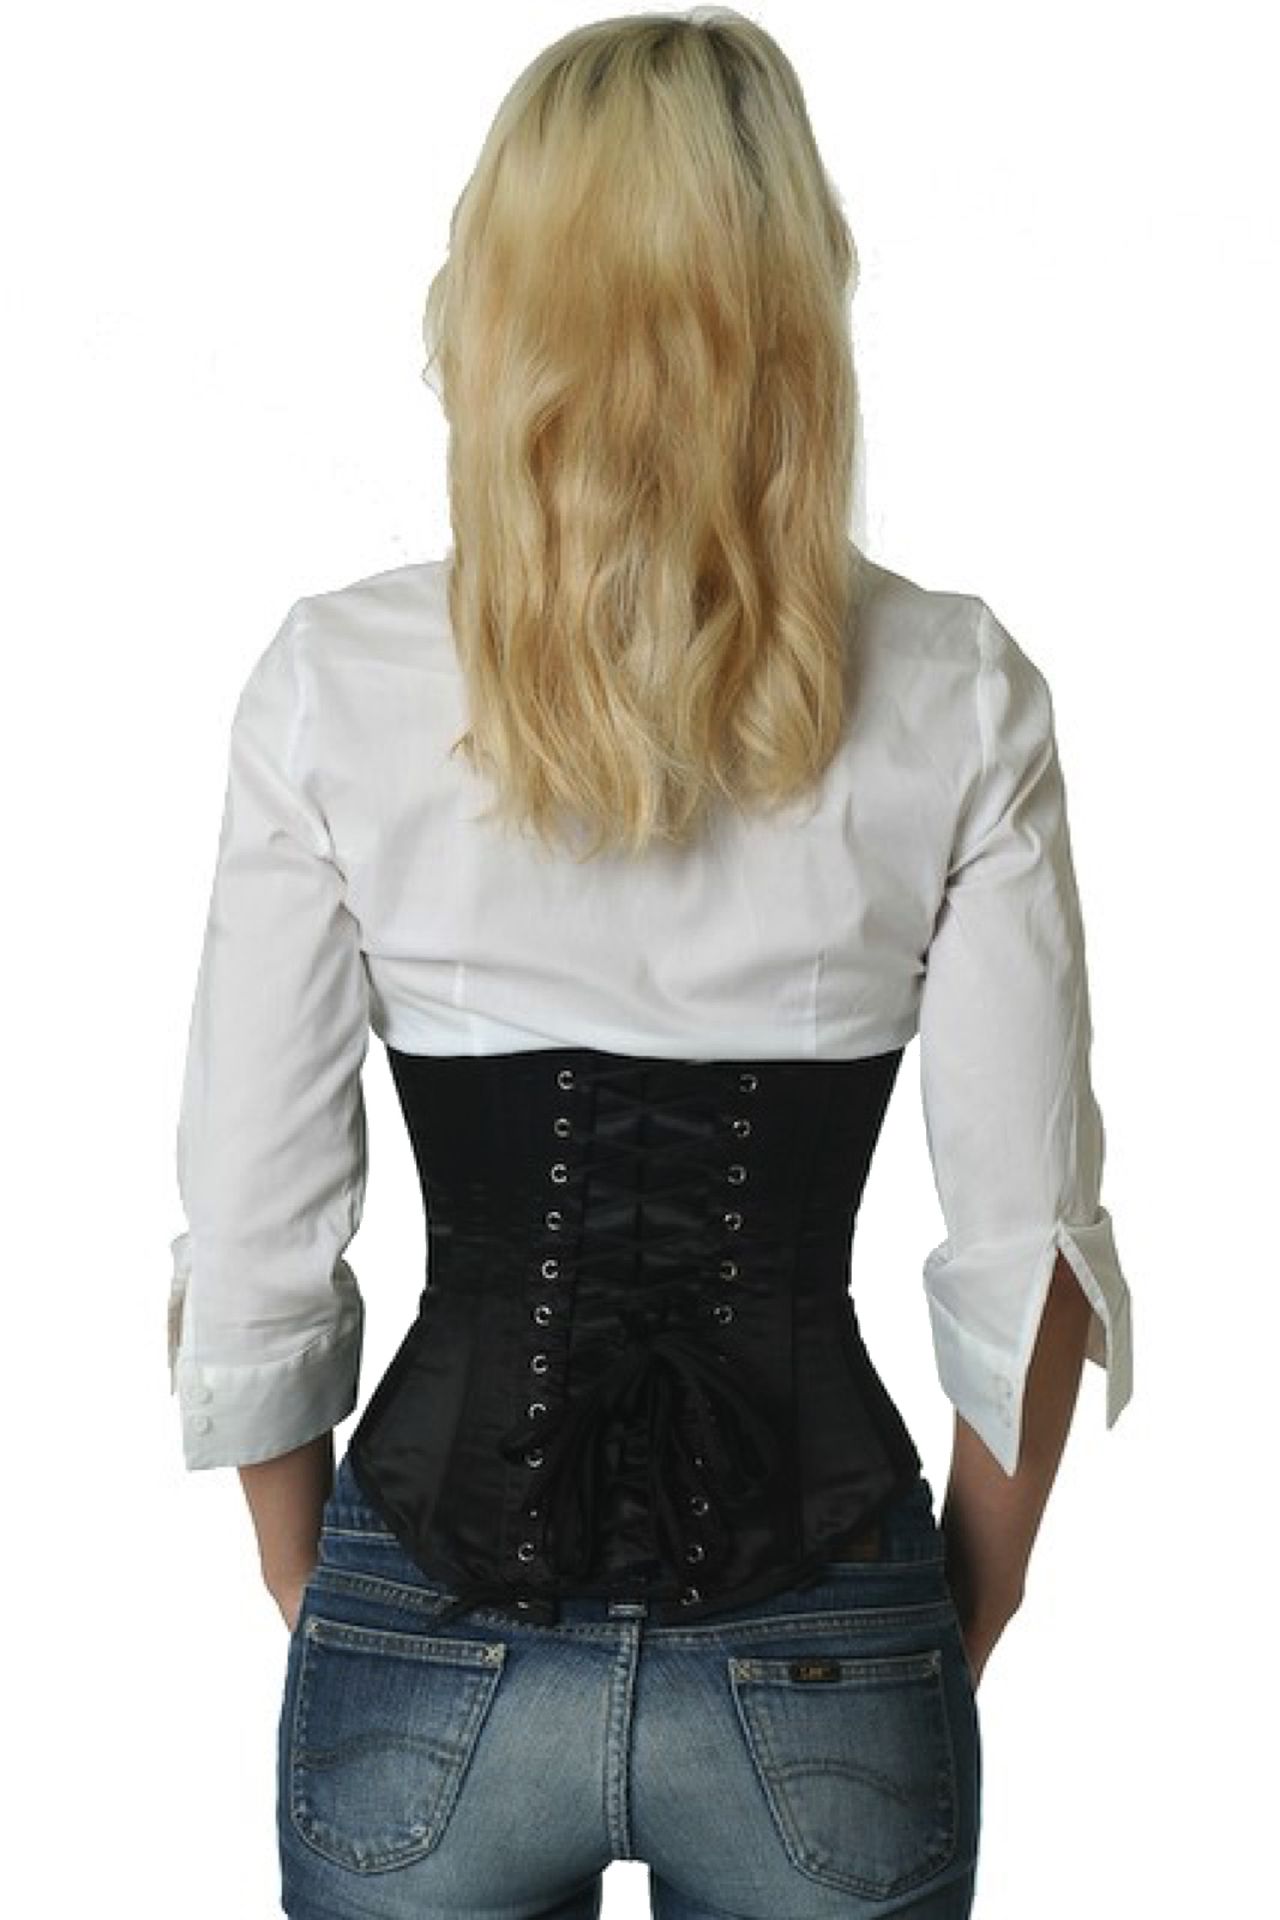 Satijn corset zwart onderborst Korset su00